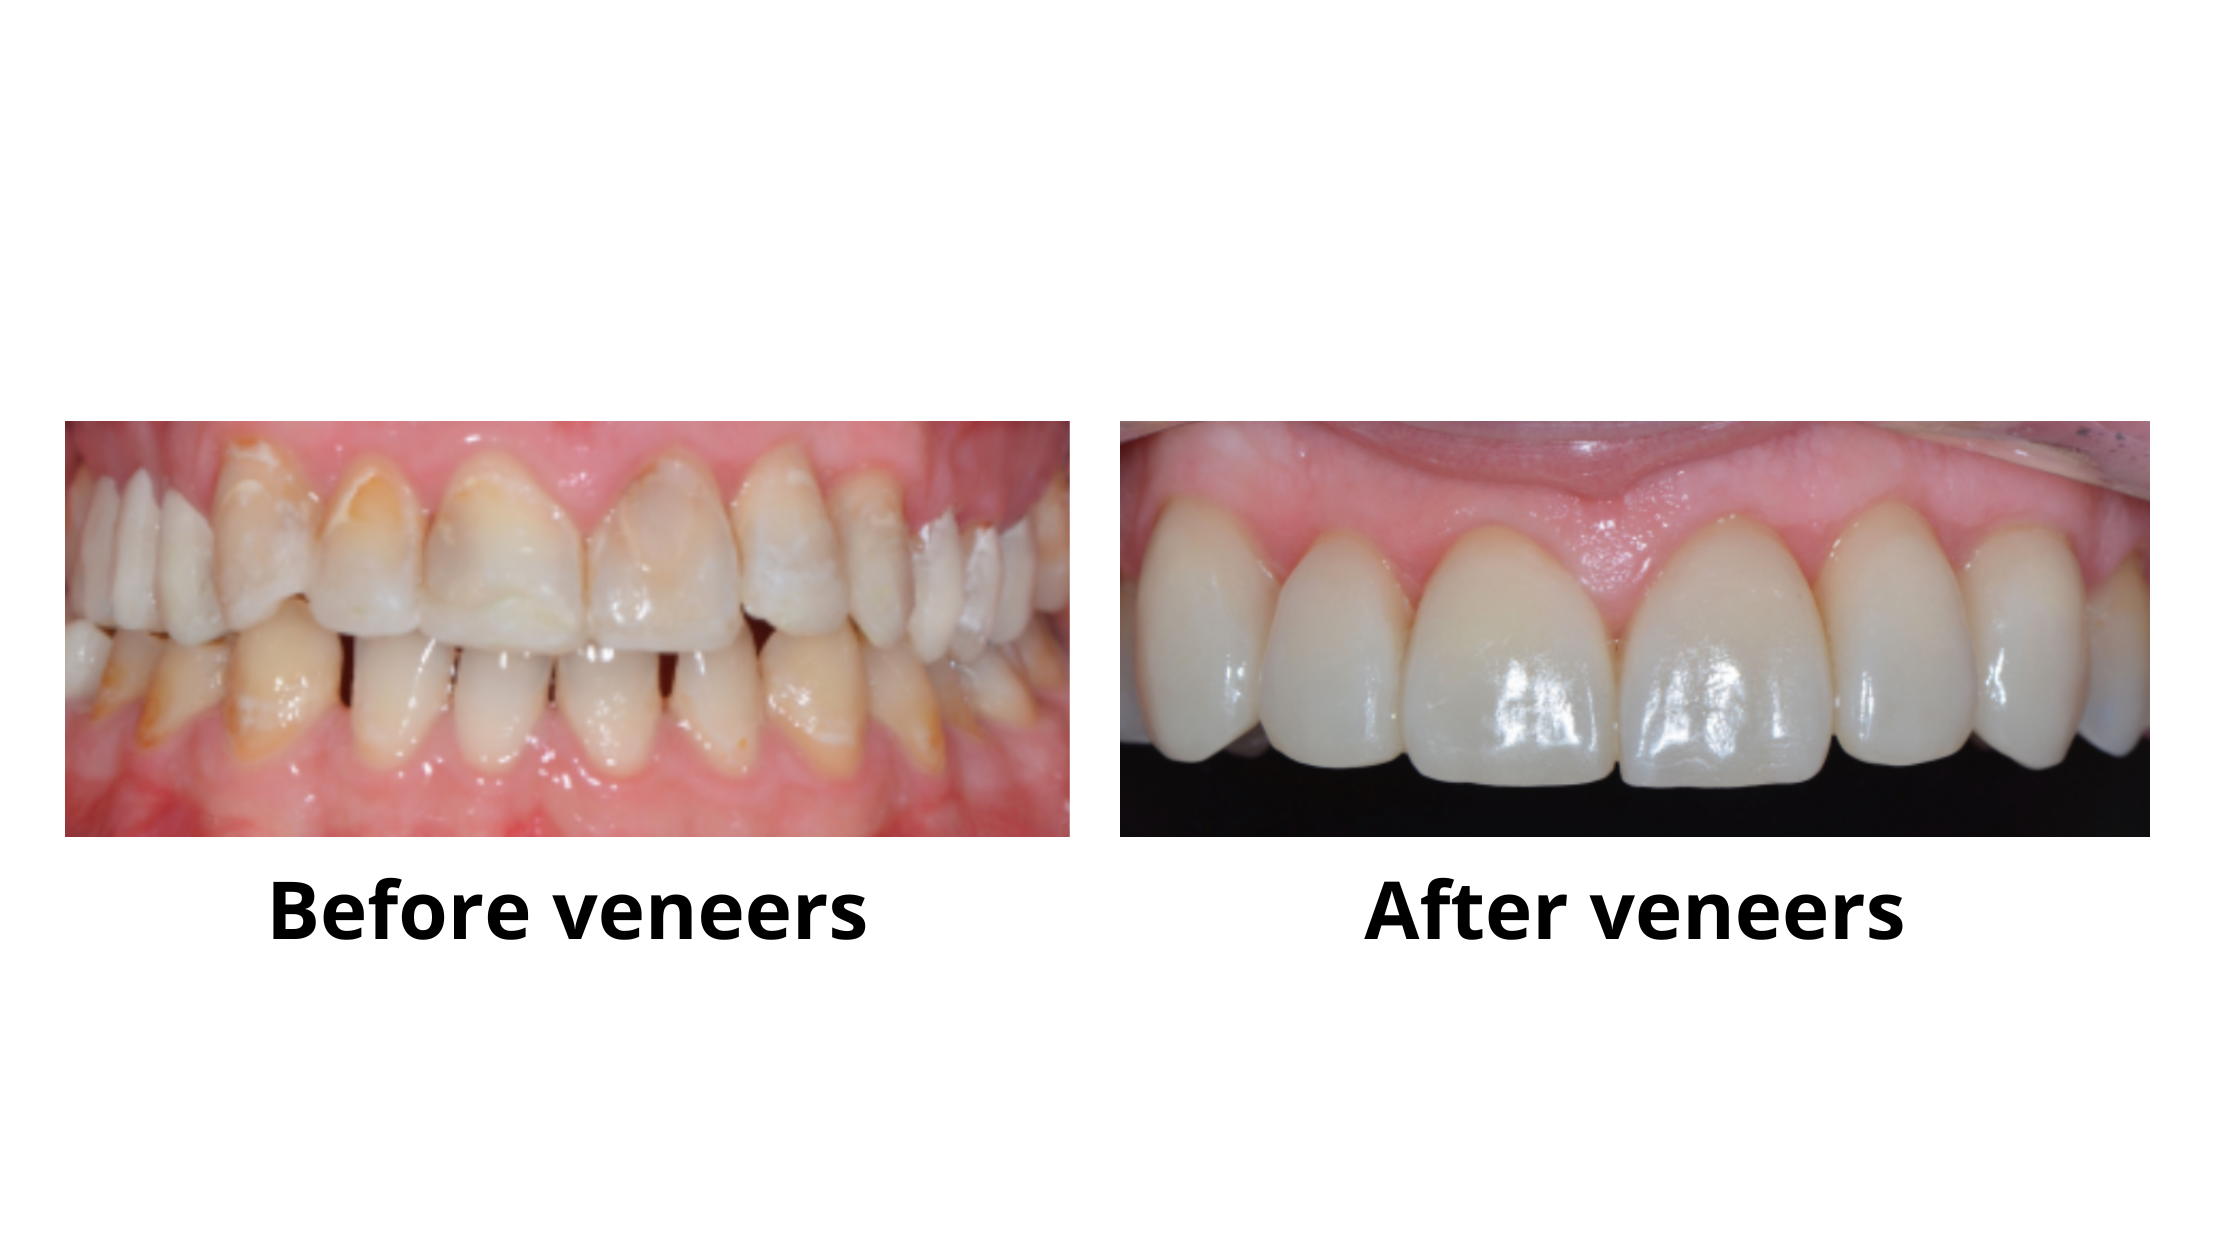 dental veneers before and after: Worn teeth restoration